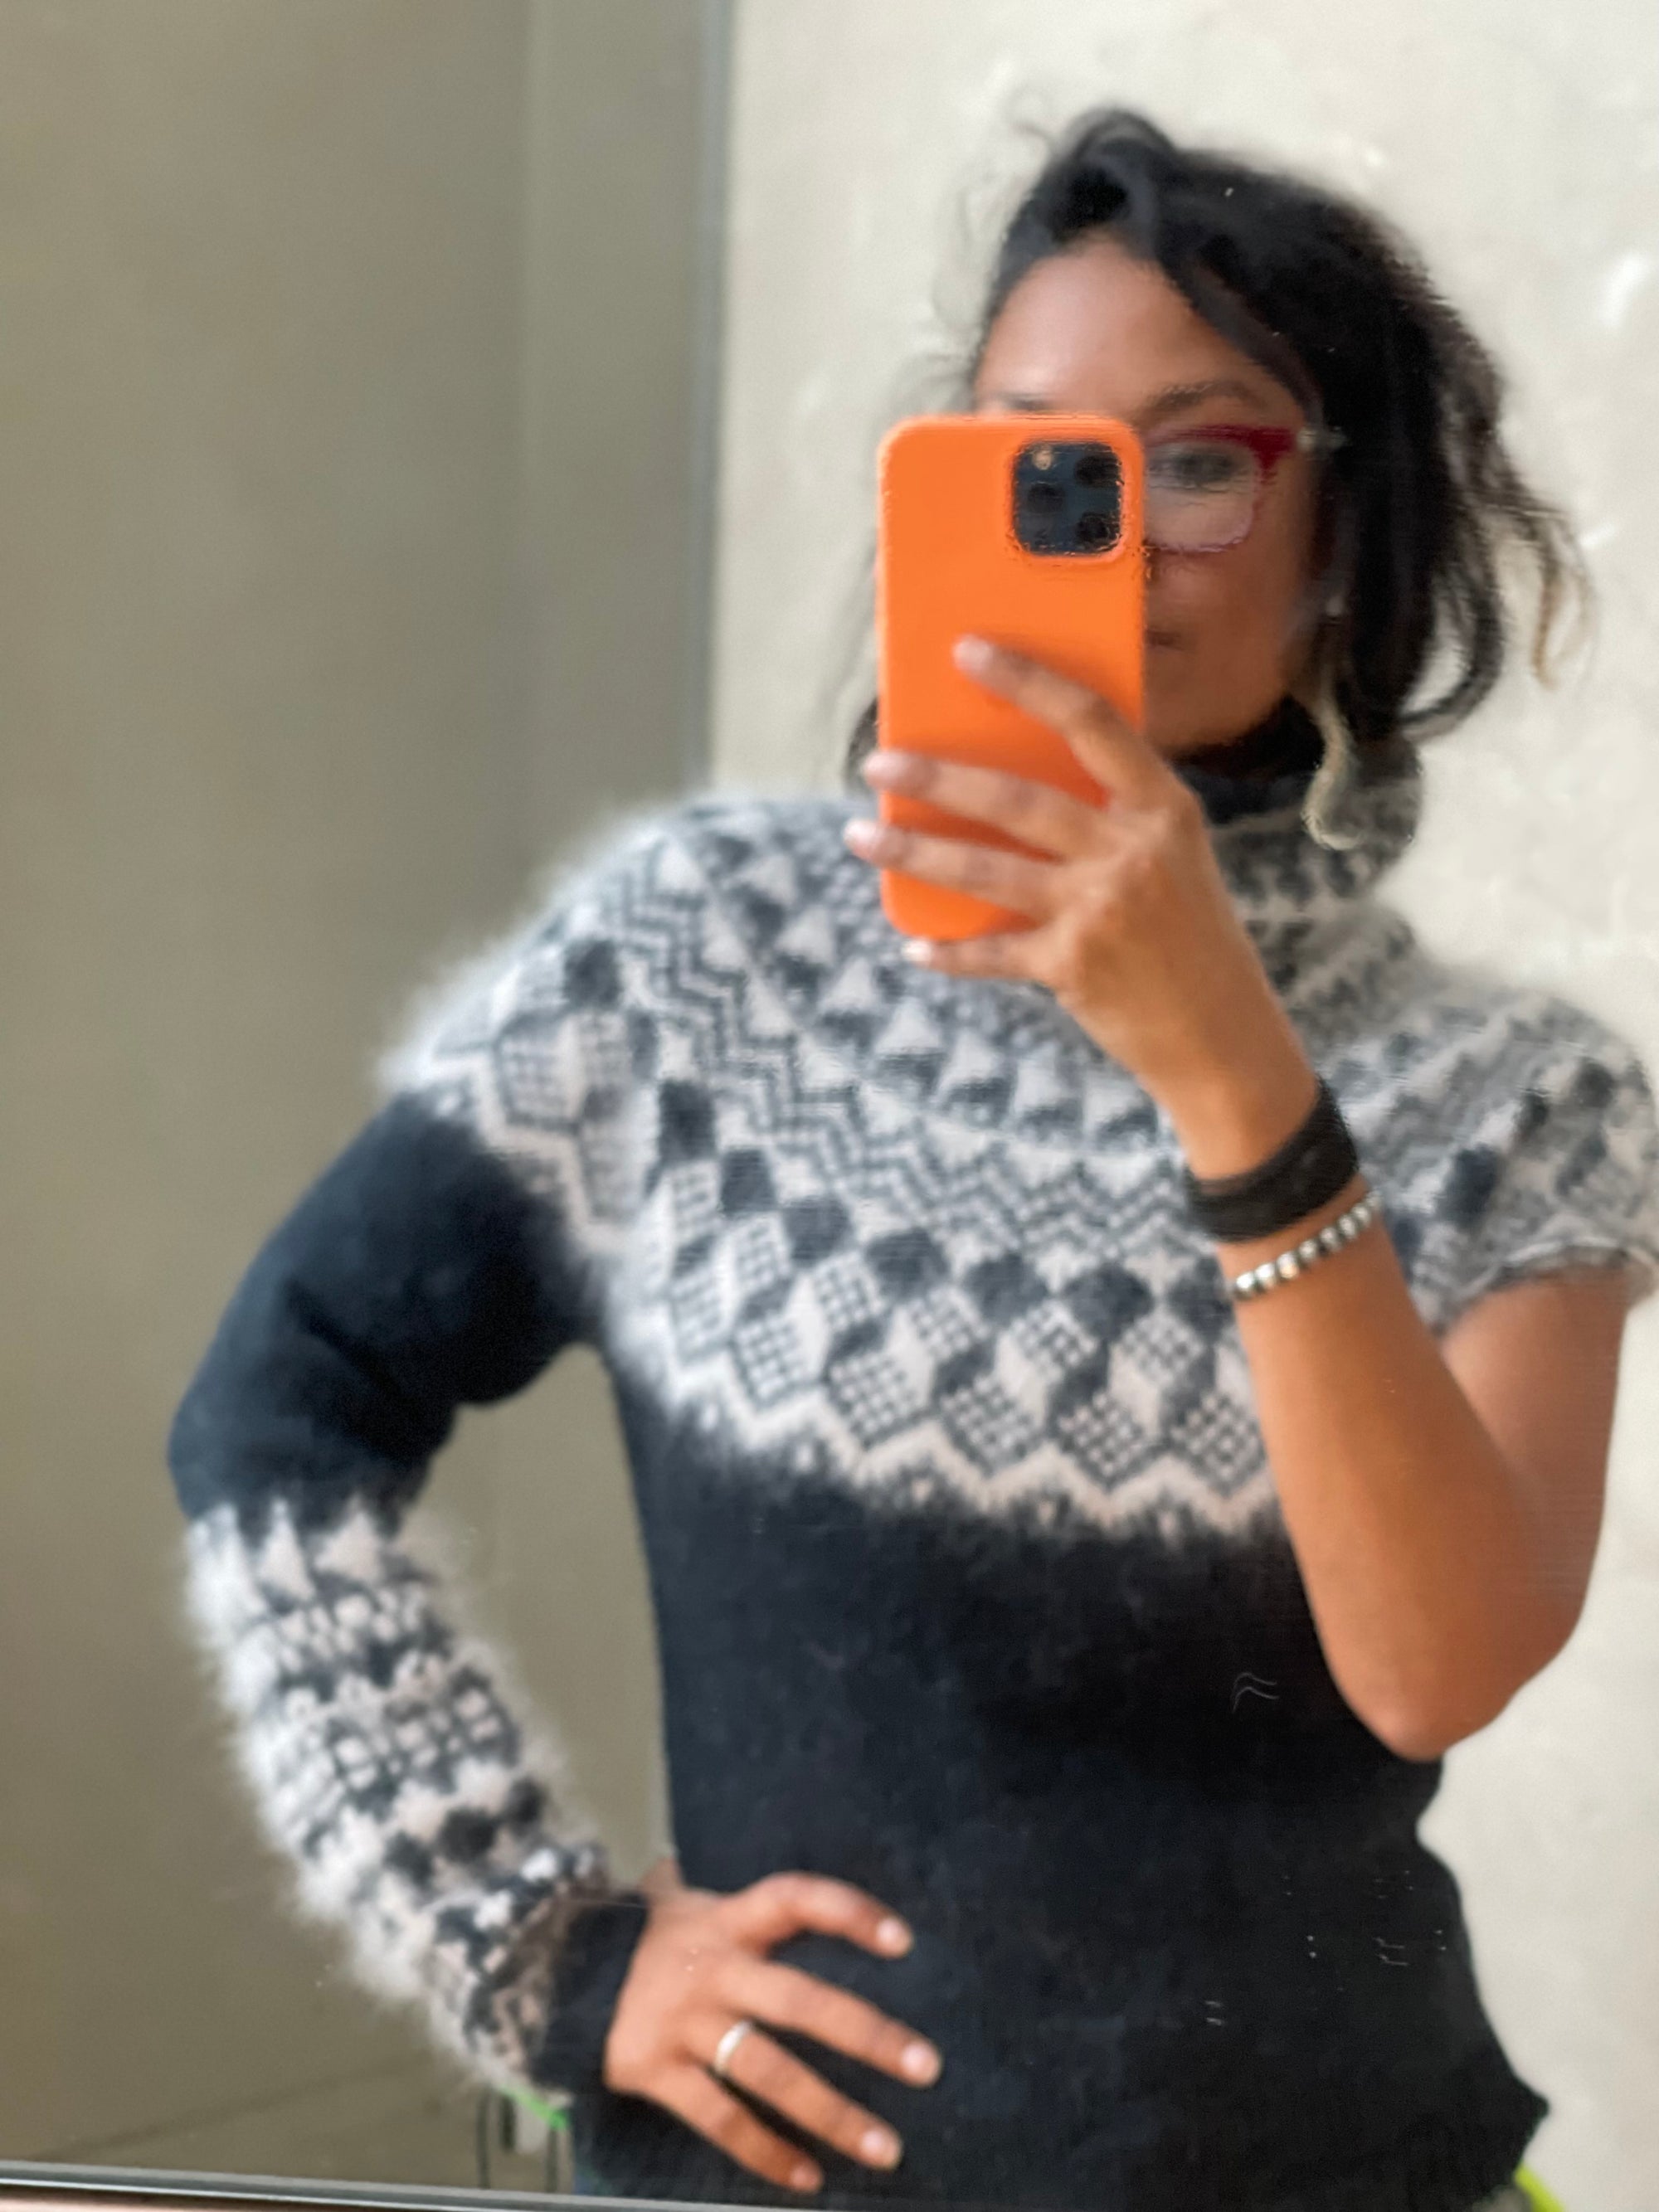 Öræfi Sweater Kits with Angora (Oraefi) Galler Yarns